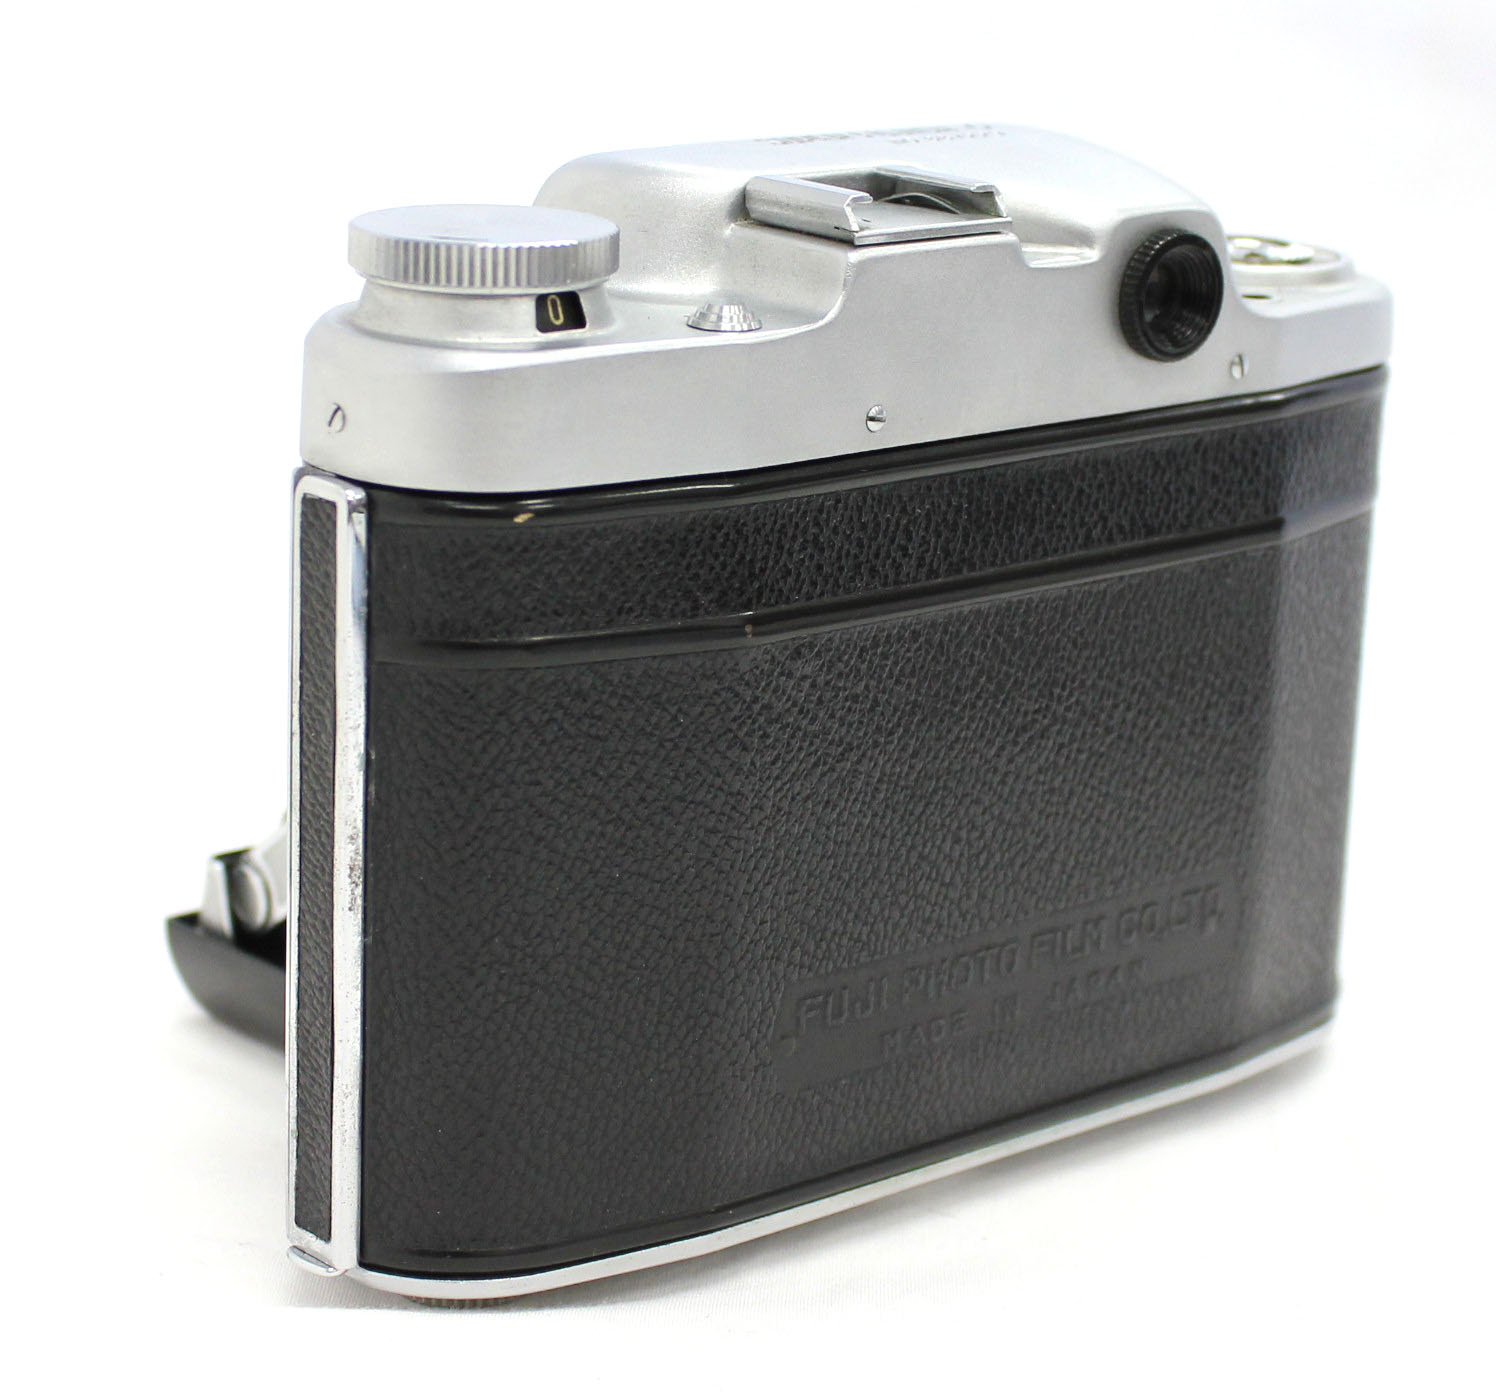  Fuji Super Fujica-6 Six 6x6 Medium Format Film Camera with Fujinar 75mm F/3.5 from Japan Photo 7